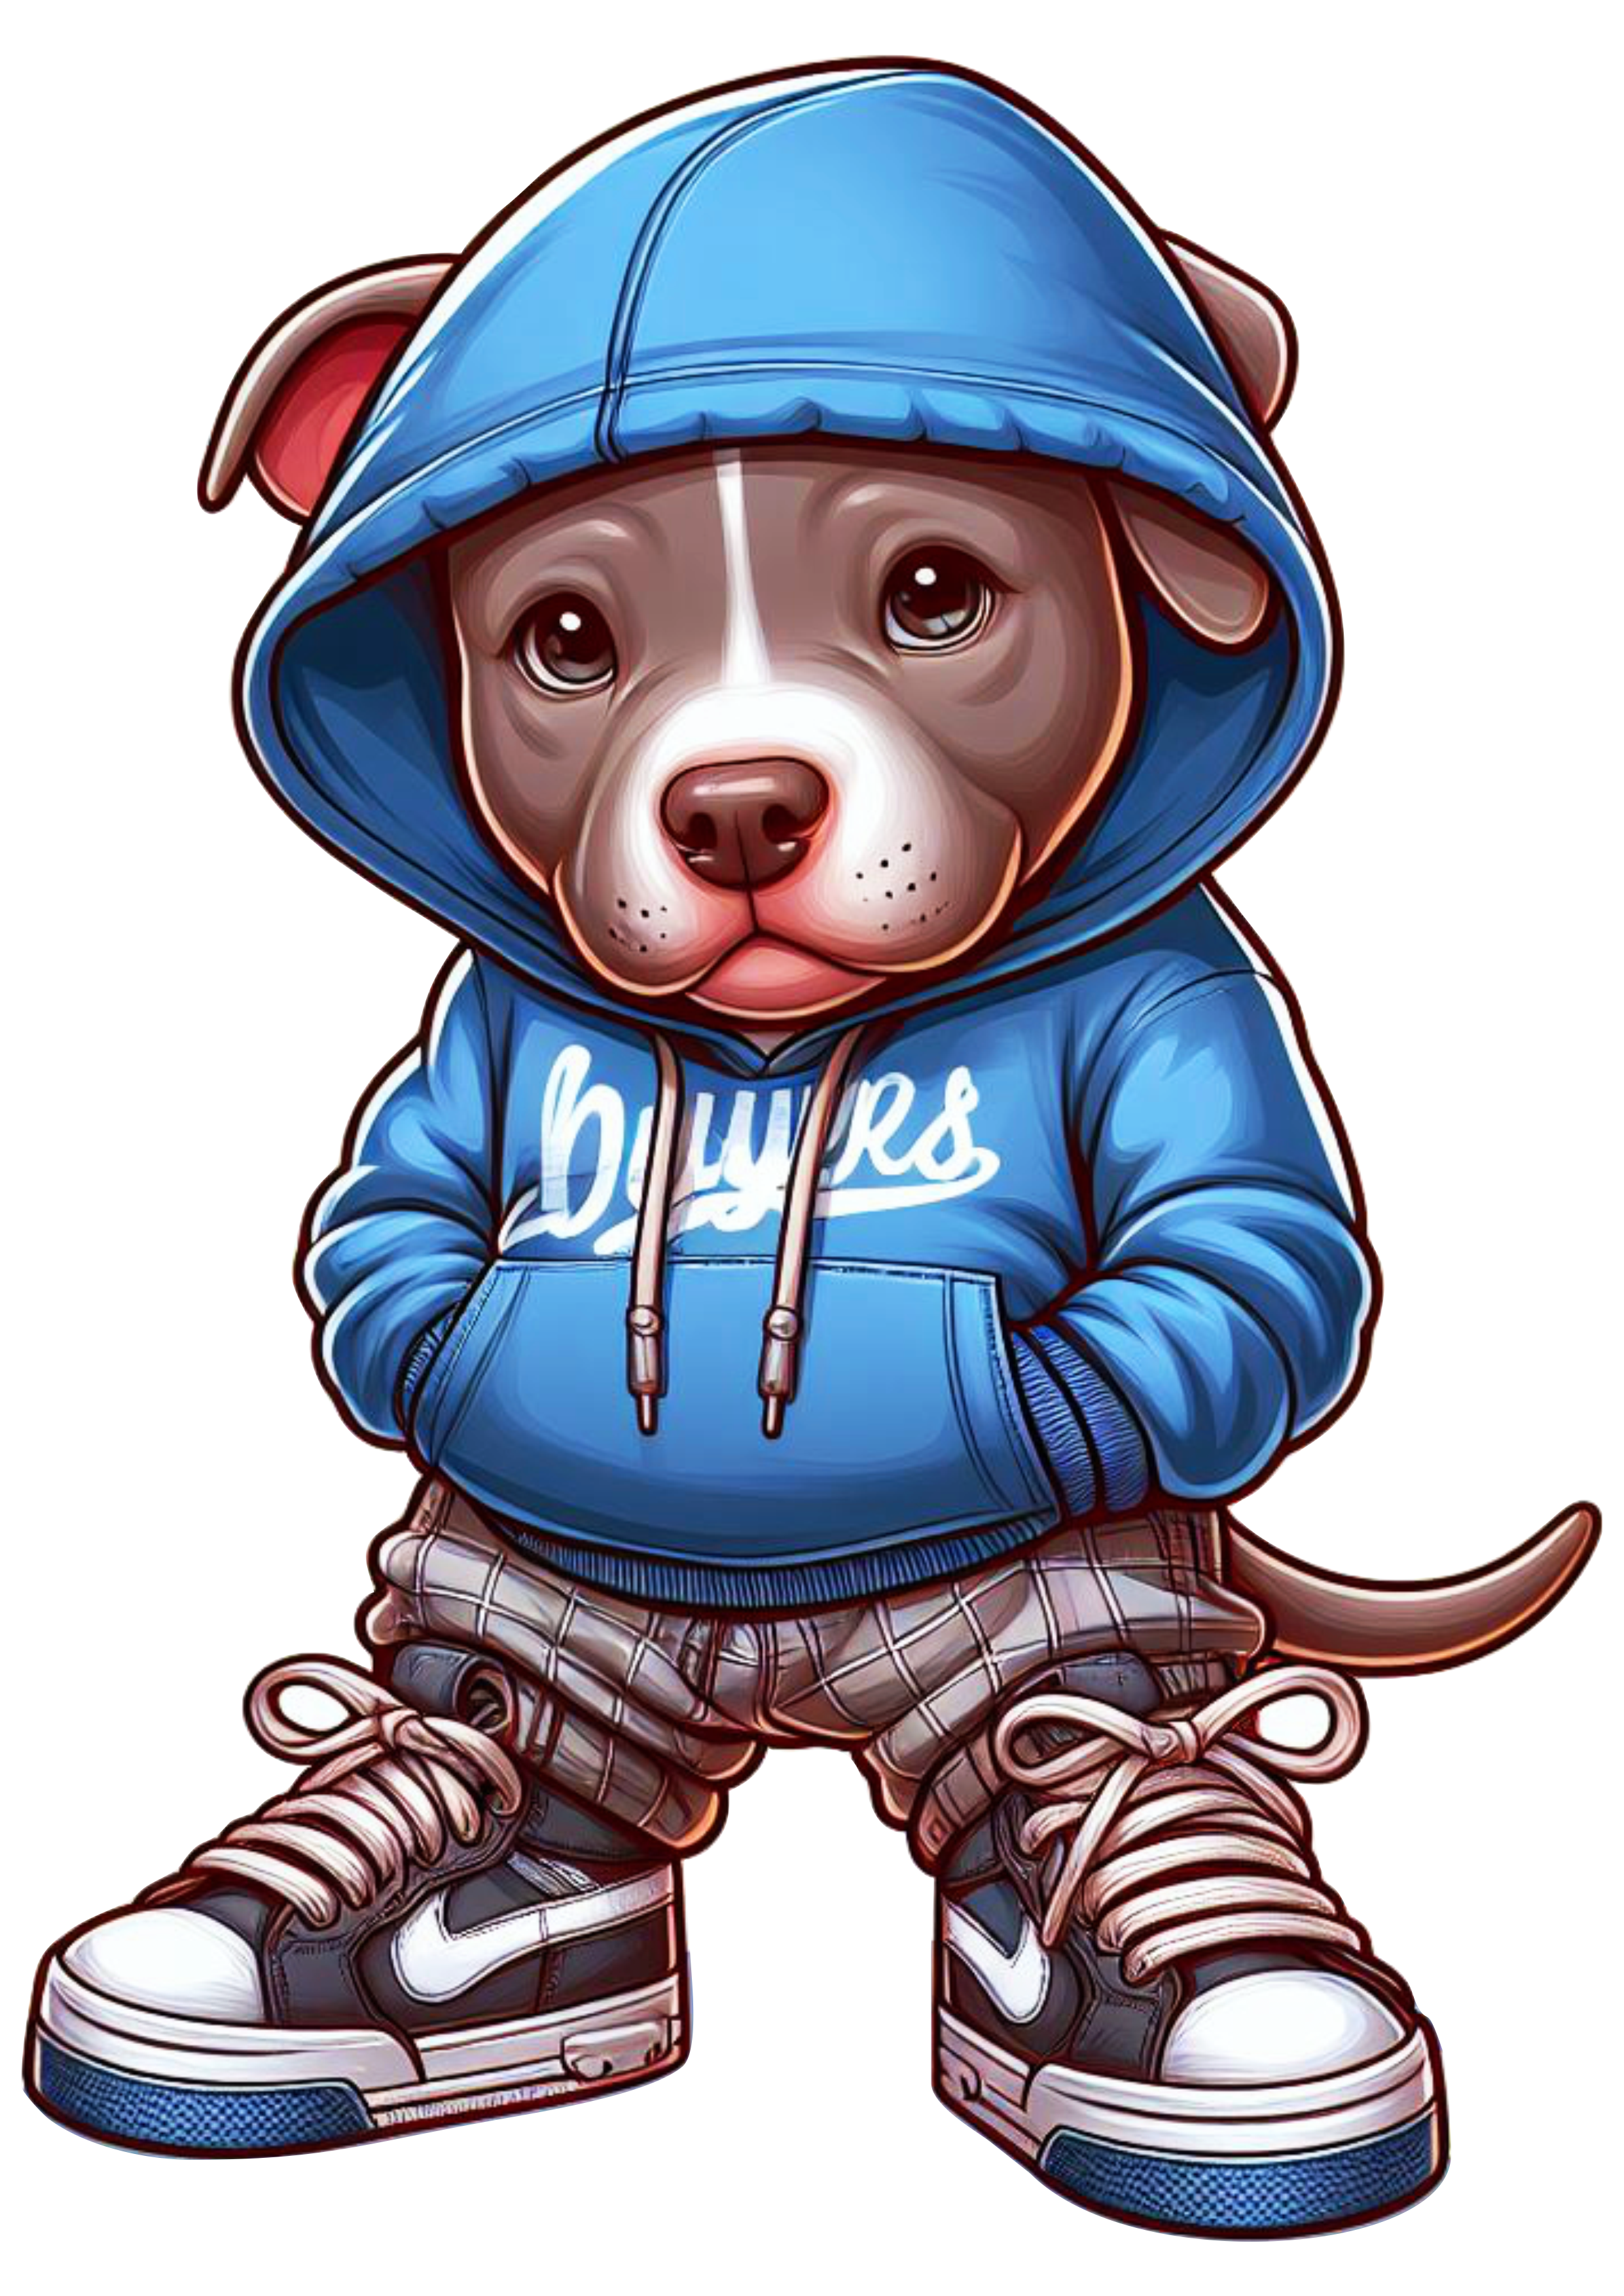 Pitbull cachorrinho de roupa de skatista desenho infantil blusão moletom com as mãos no bolso png